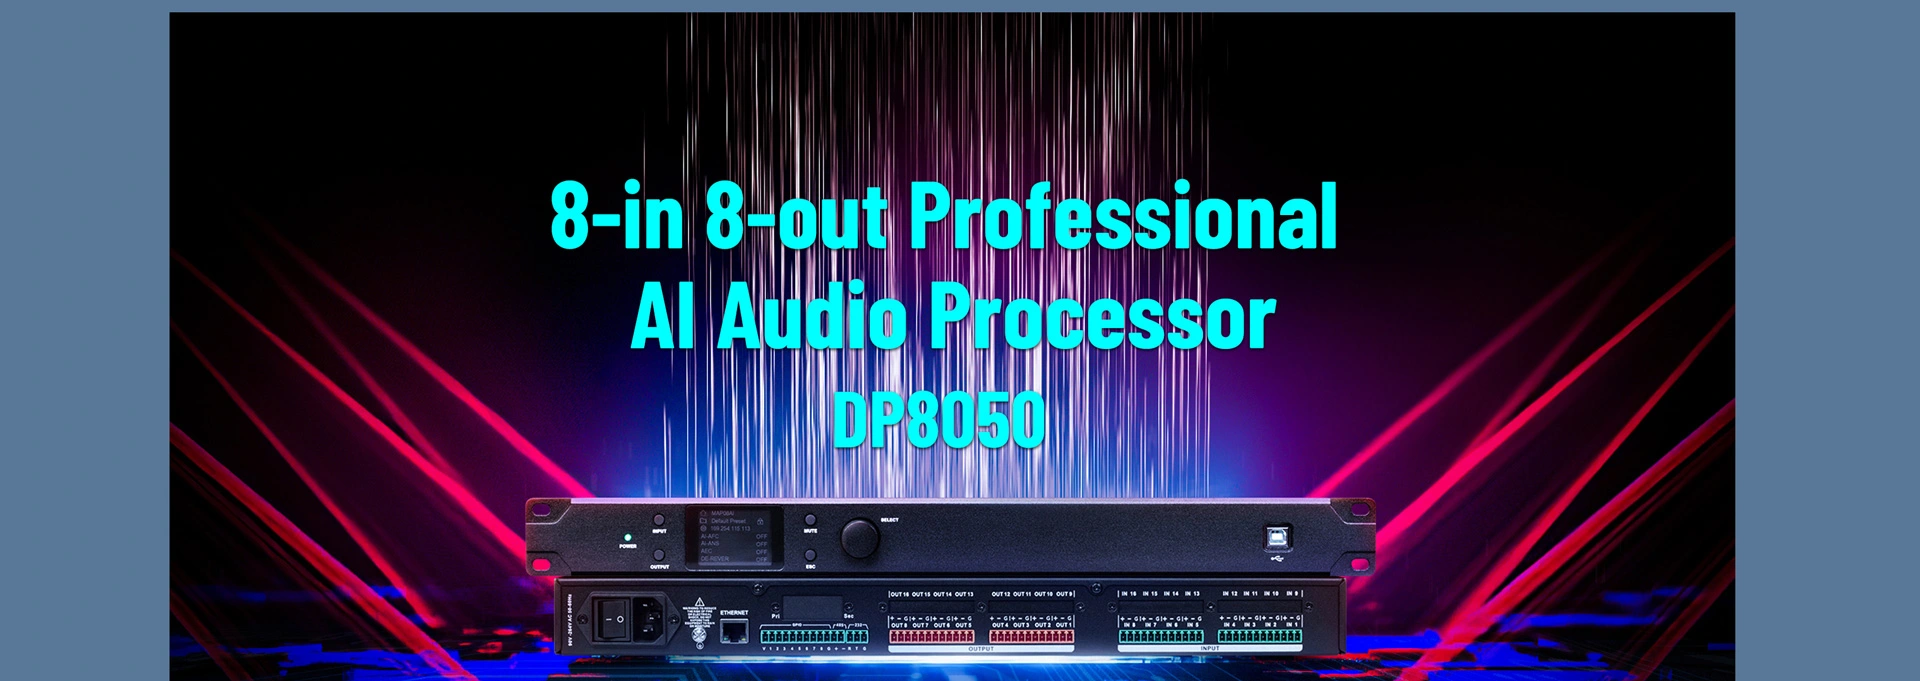 Processore Audio Al professionale 8-in 8-out